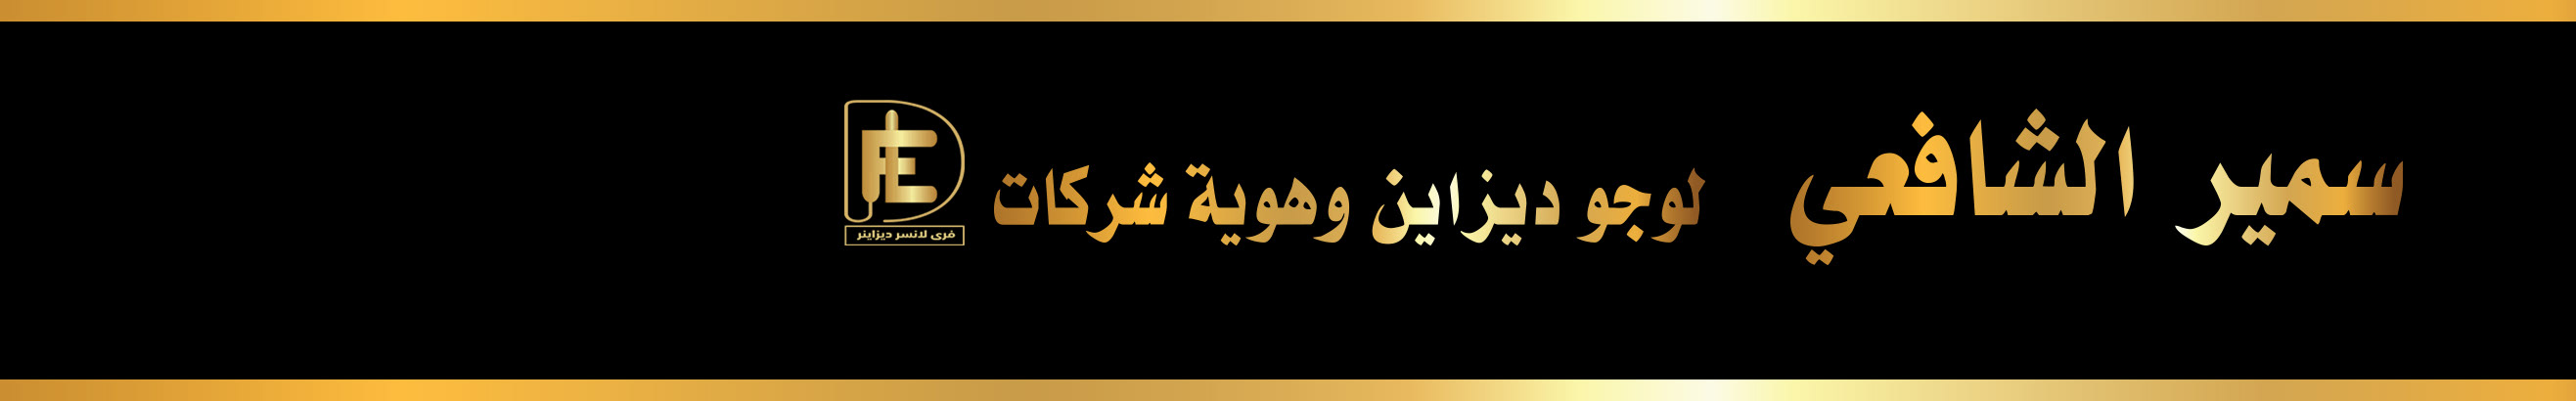 سمير الشافعى's profile banner